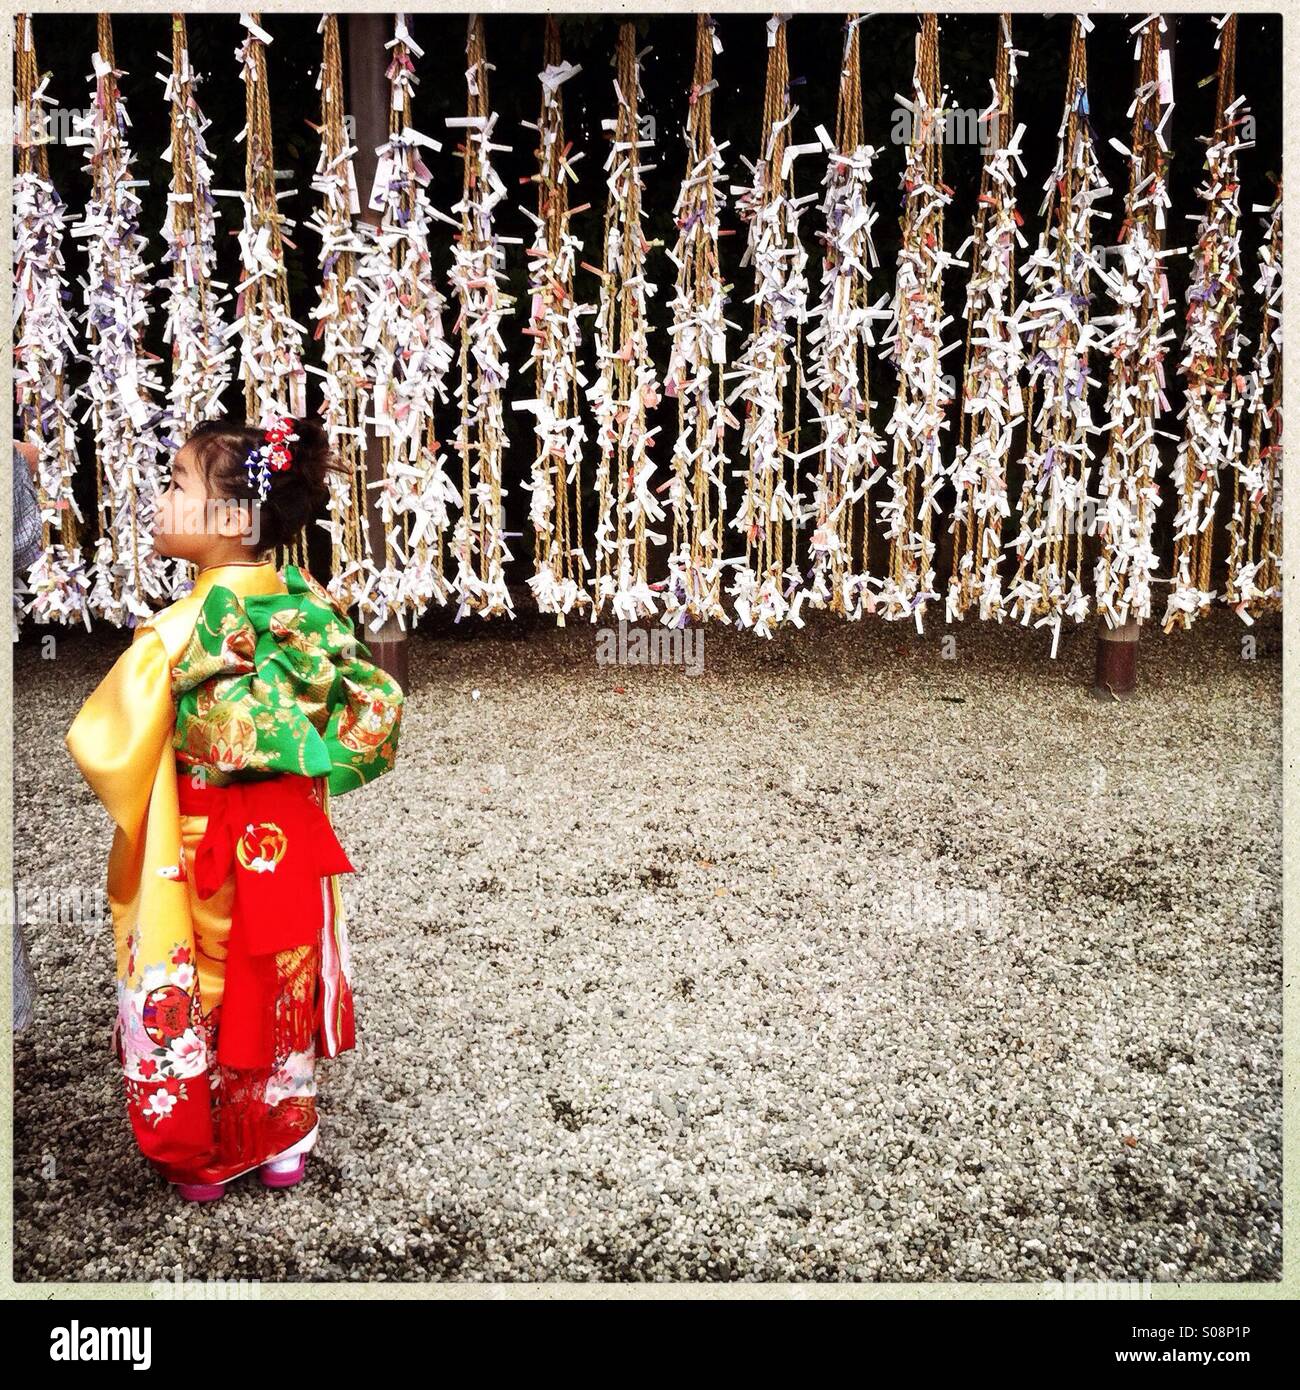 Ein japanisches Mädchen gekleidet in traditionellen Kimonos für Shichi-Go-San, japanische traditionelle Veranstaltung, das Wachstum von Kindern zu feiern. Stockfoto